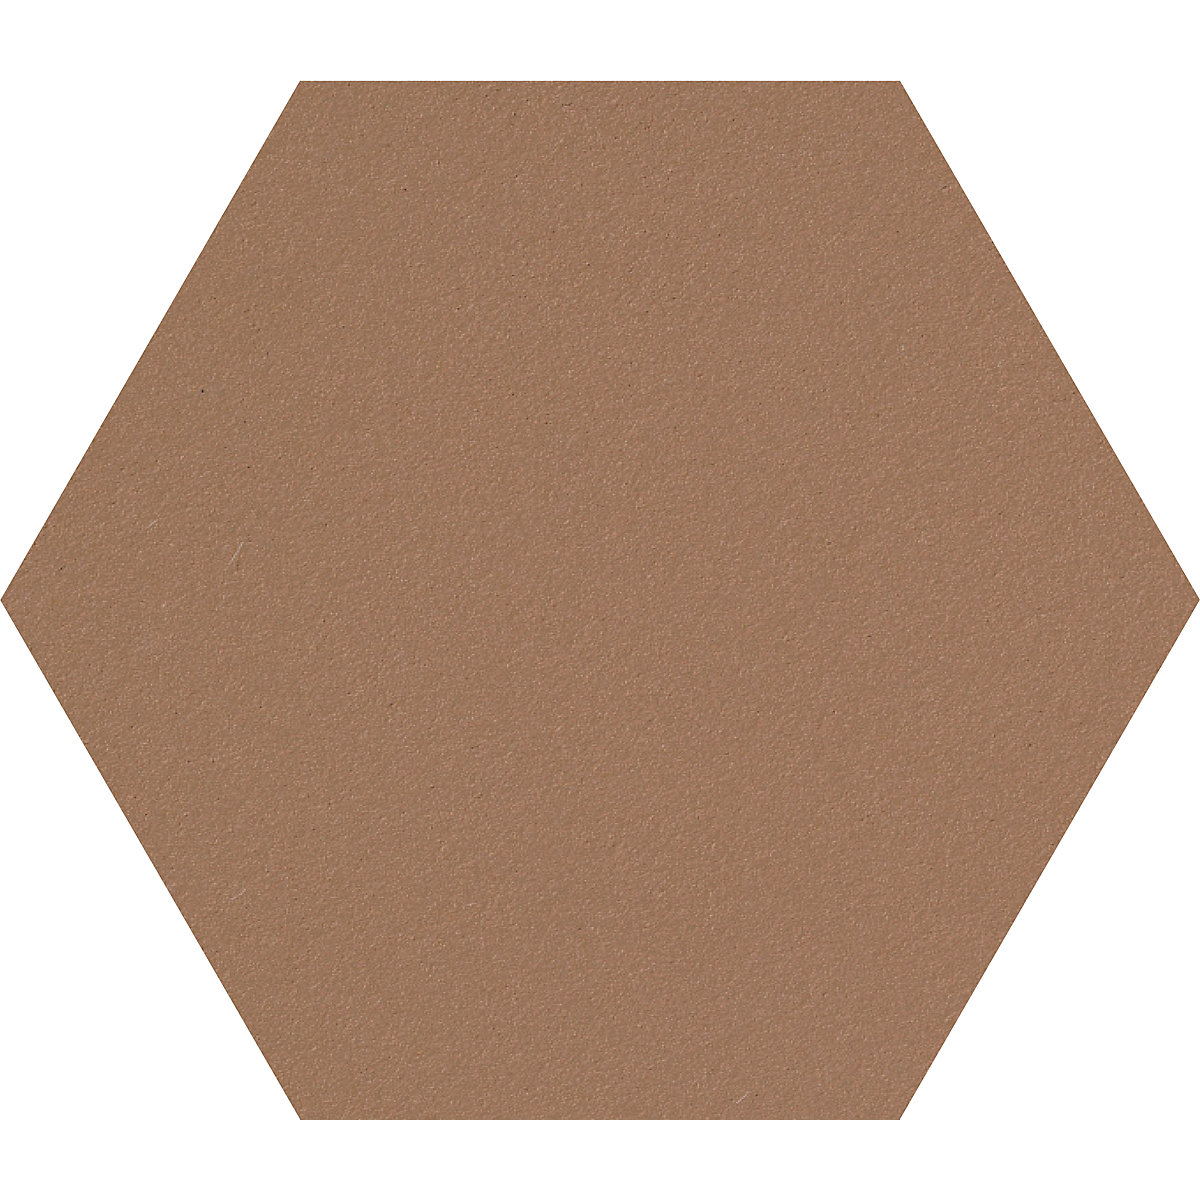 Tableau à épingles design hexagonal – Chameleon, liège, l x h 600 x 600 mm, marron clair-34